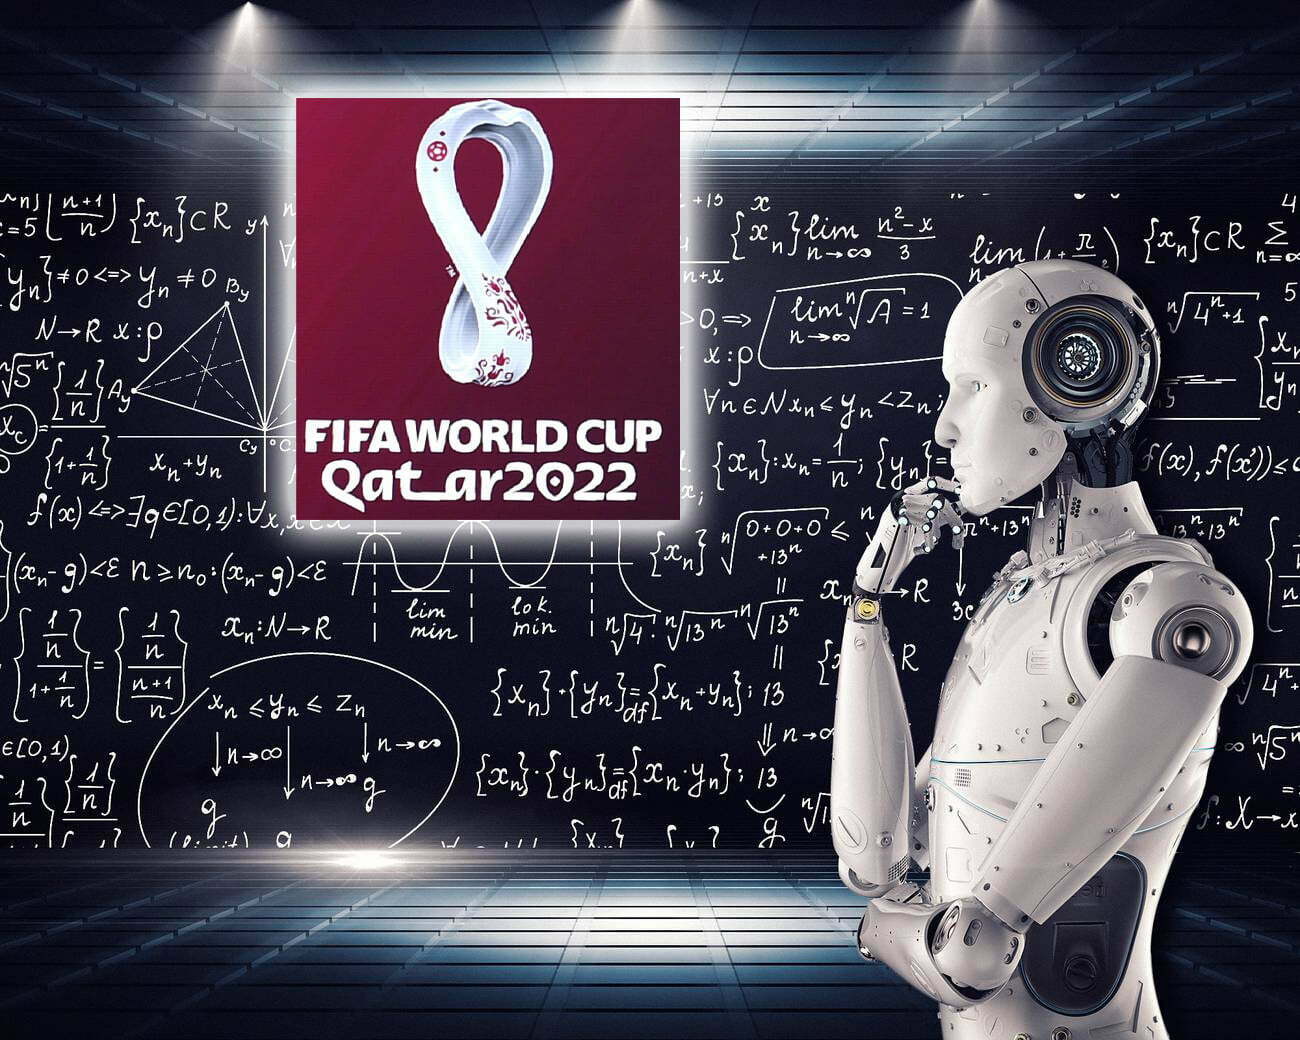 Usarán Inteligencia artificial para marcar fueras de juego en Qatar